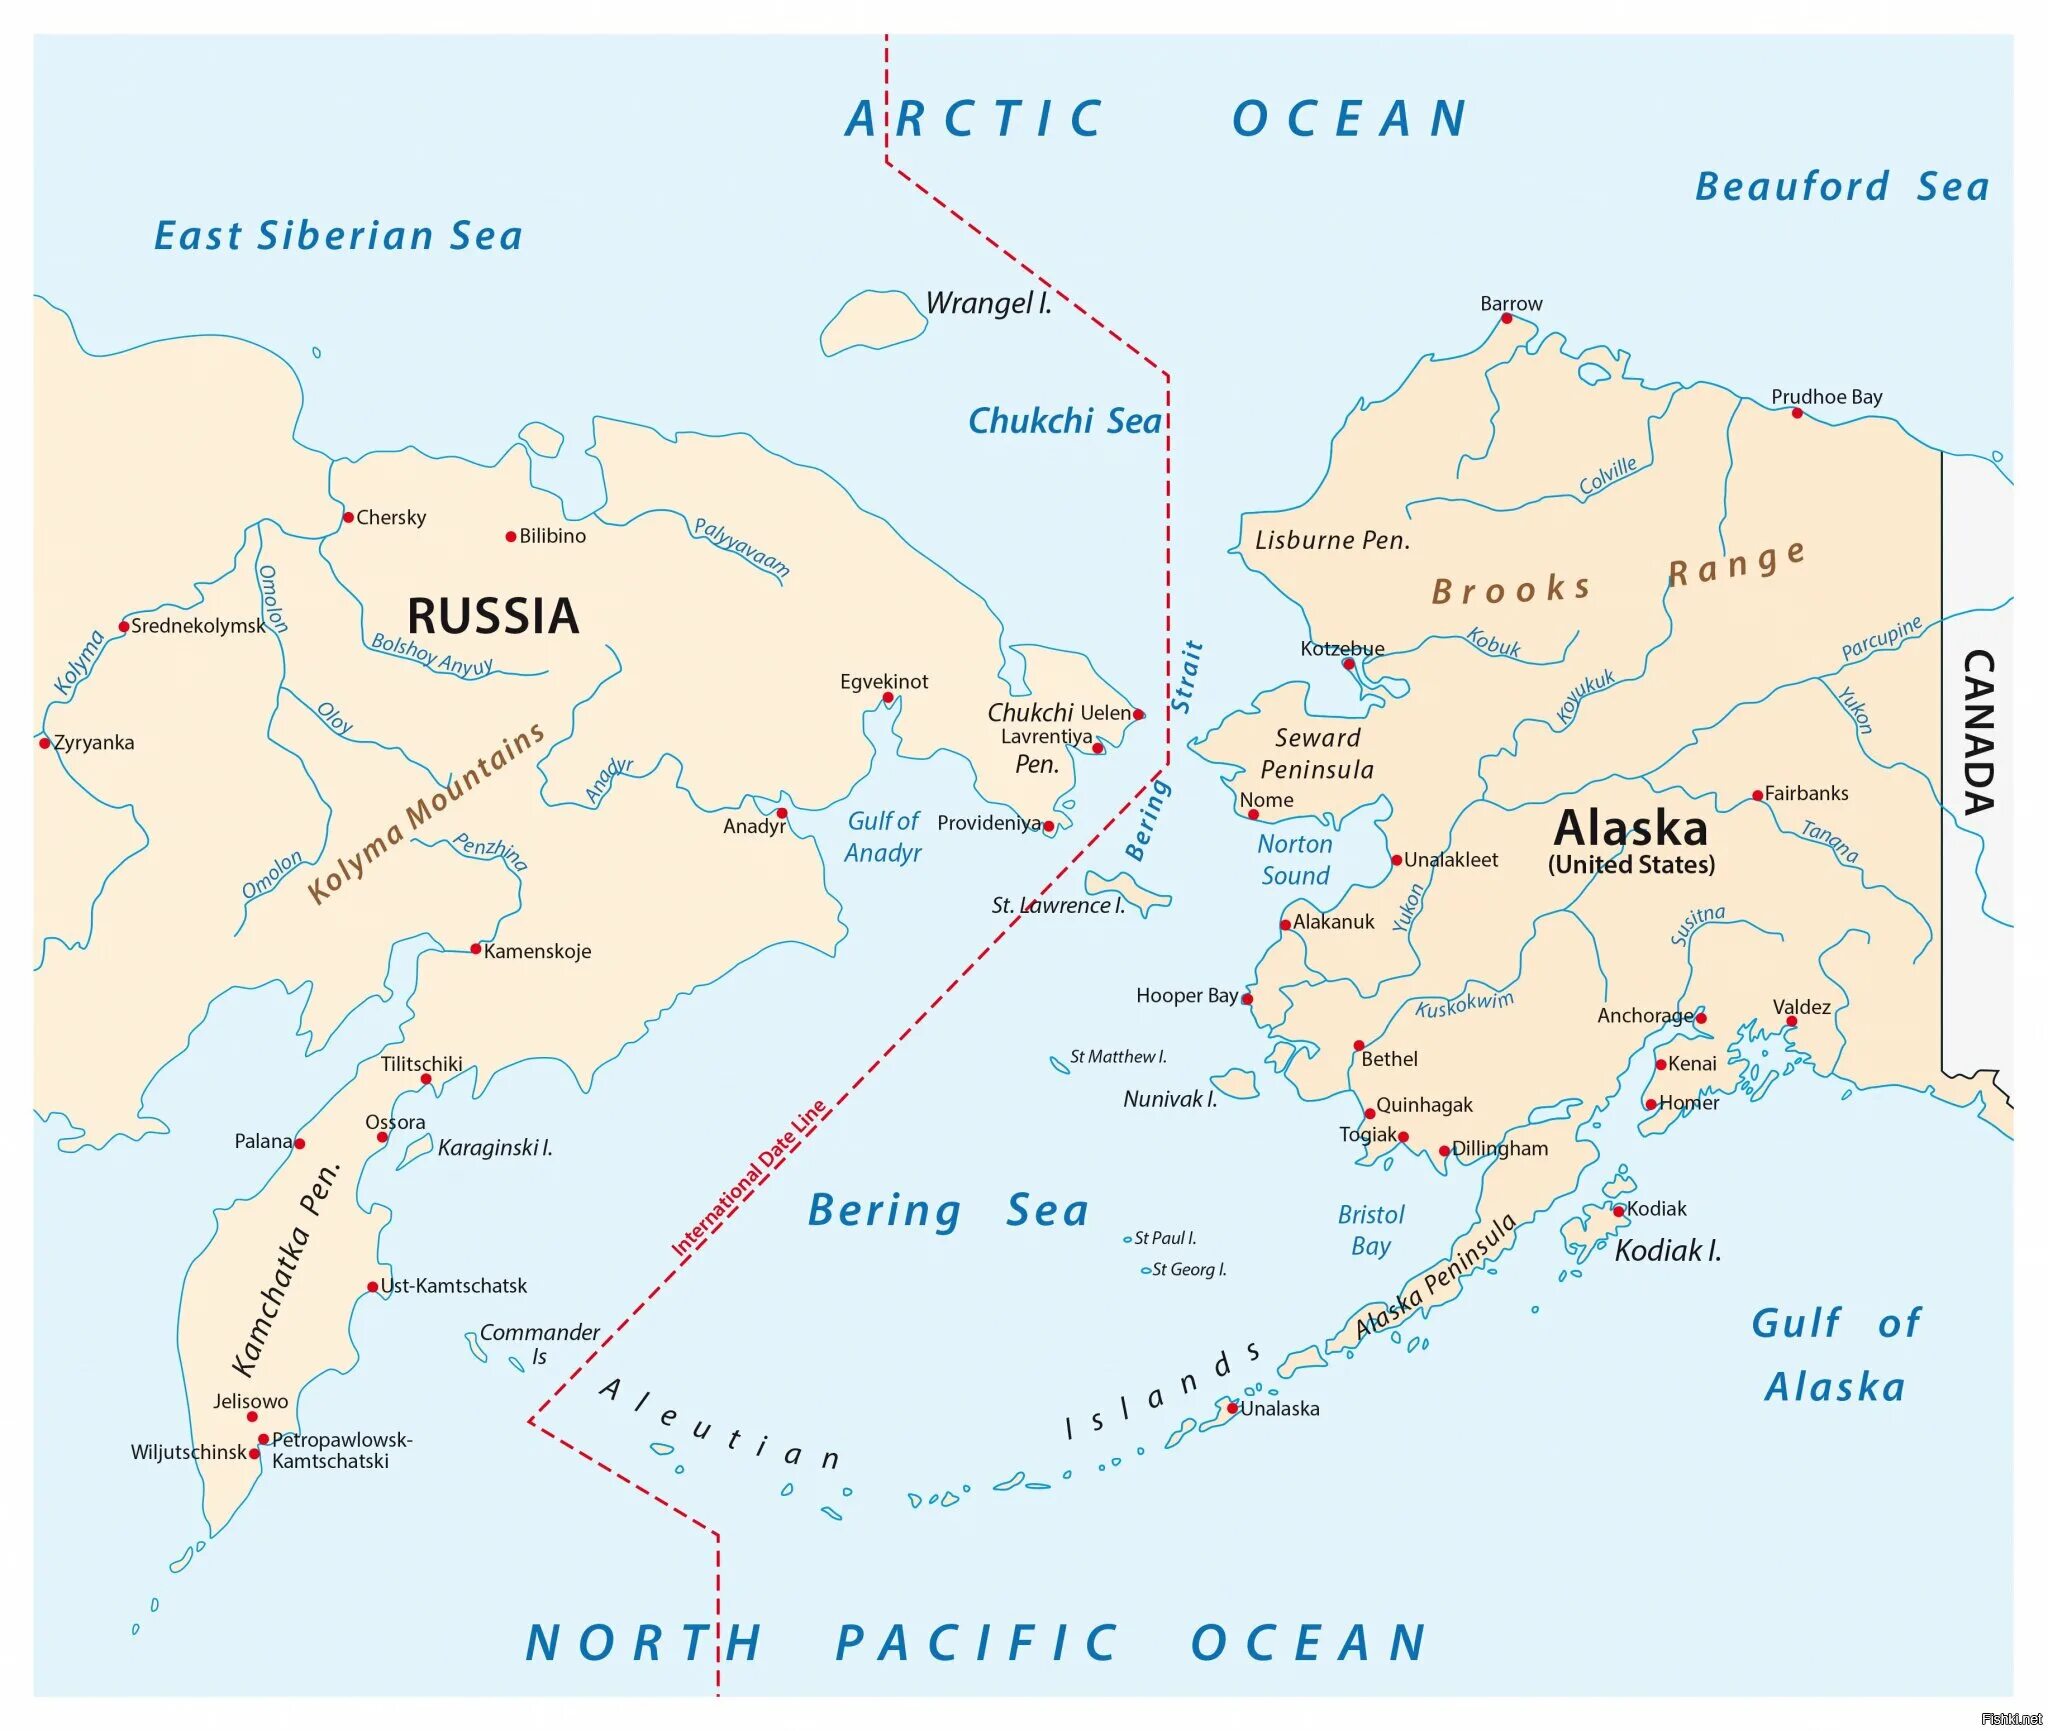 Найти на карте берингов пролив. Карта Берингова пролива и Аляски. Аляска Берингов пролив Россия на карте. Берингов пролив на карте. Морские границы России на карте Берингов пролив.